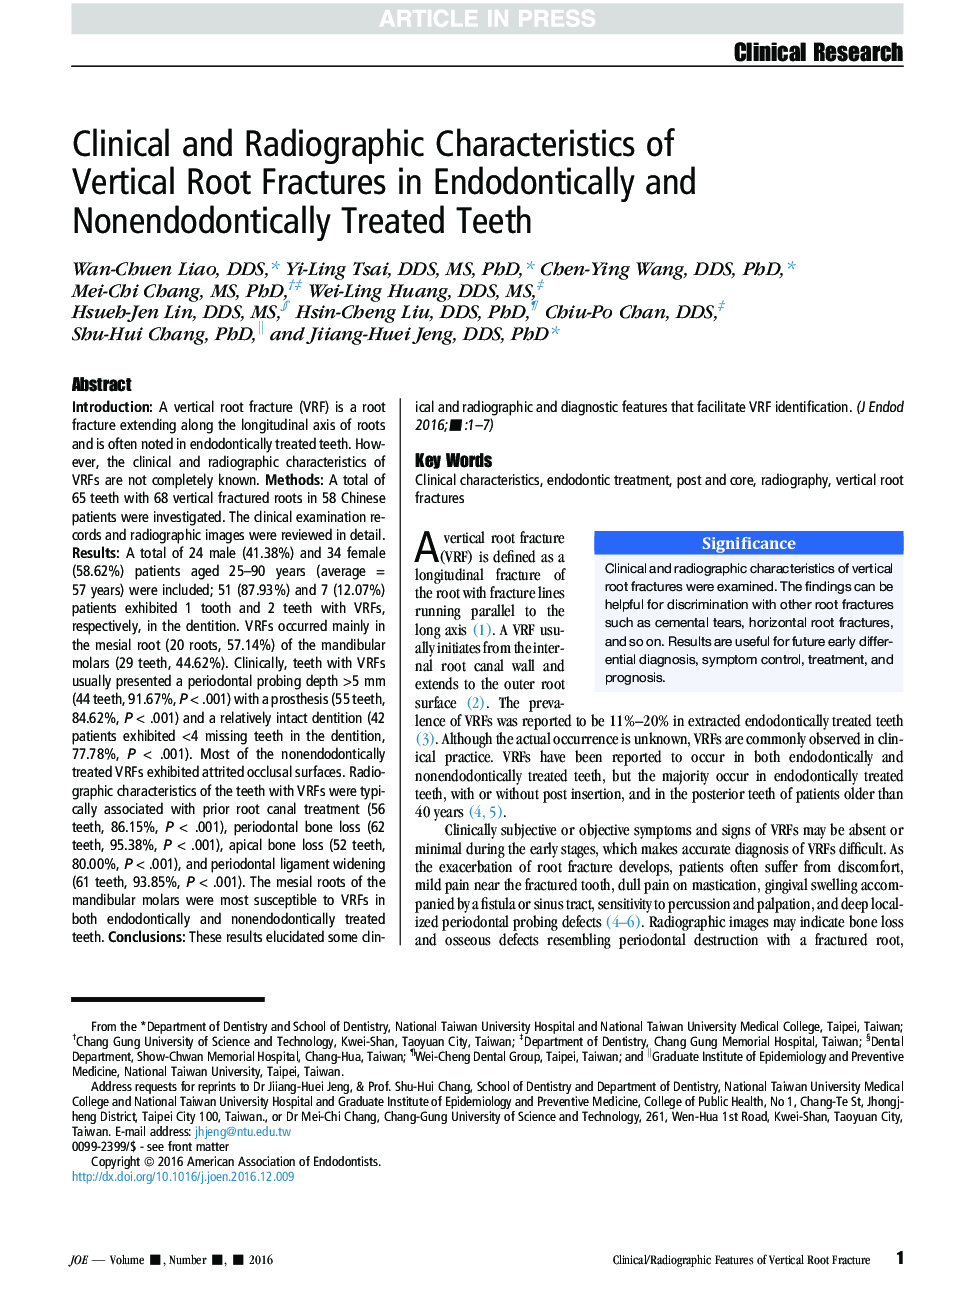 ویژگی های بالینی و رادیوگرافی شکستگی های ریشه عمودی در دندان های درمان شده اندودنتیتیک و غیر دندانی 